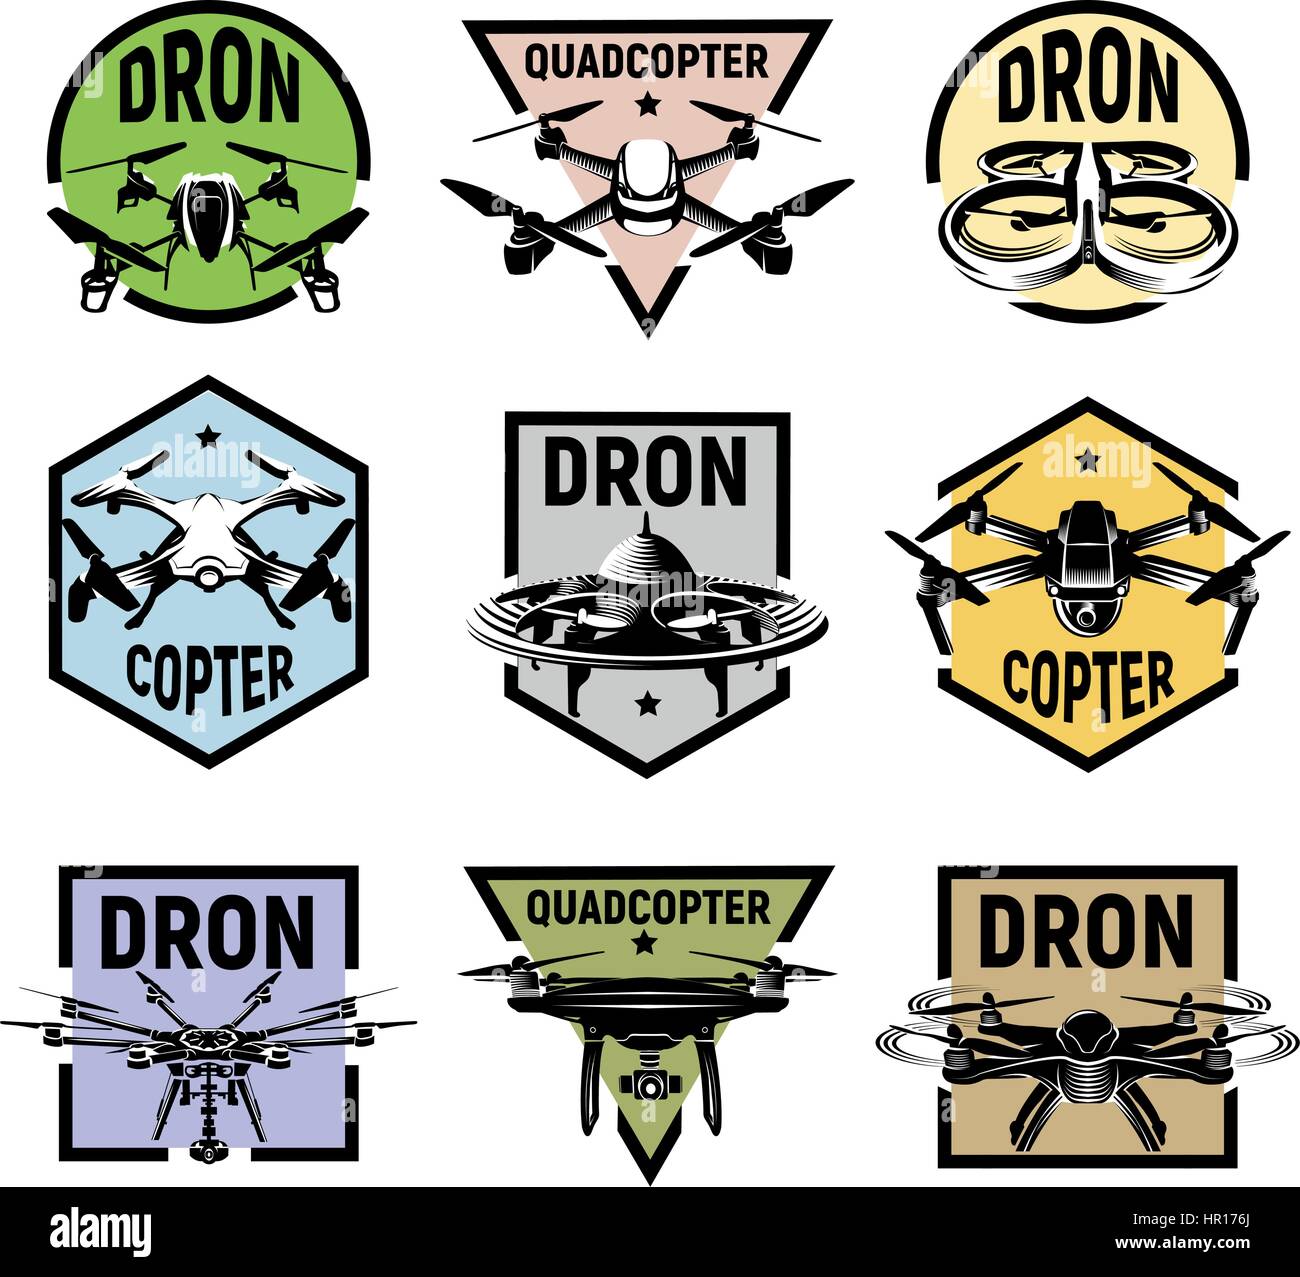 Icônes de quadcopter isolés cadres colorés, rc drone fpv, collection de logos Logo illustration vecteur de l'appareil. Illustration de Vecteur